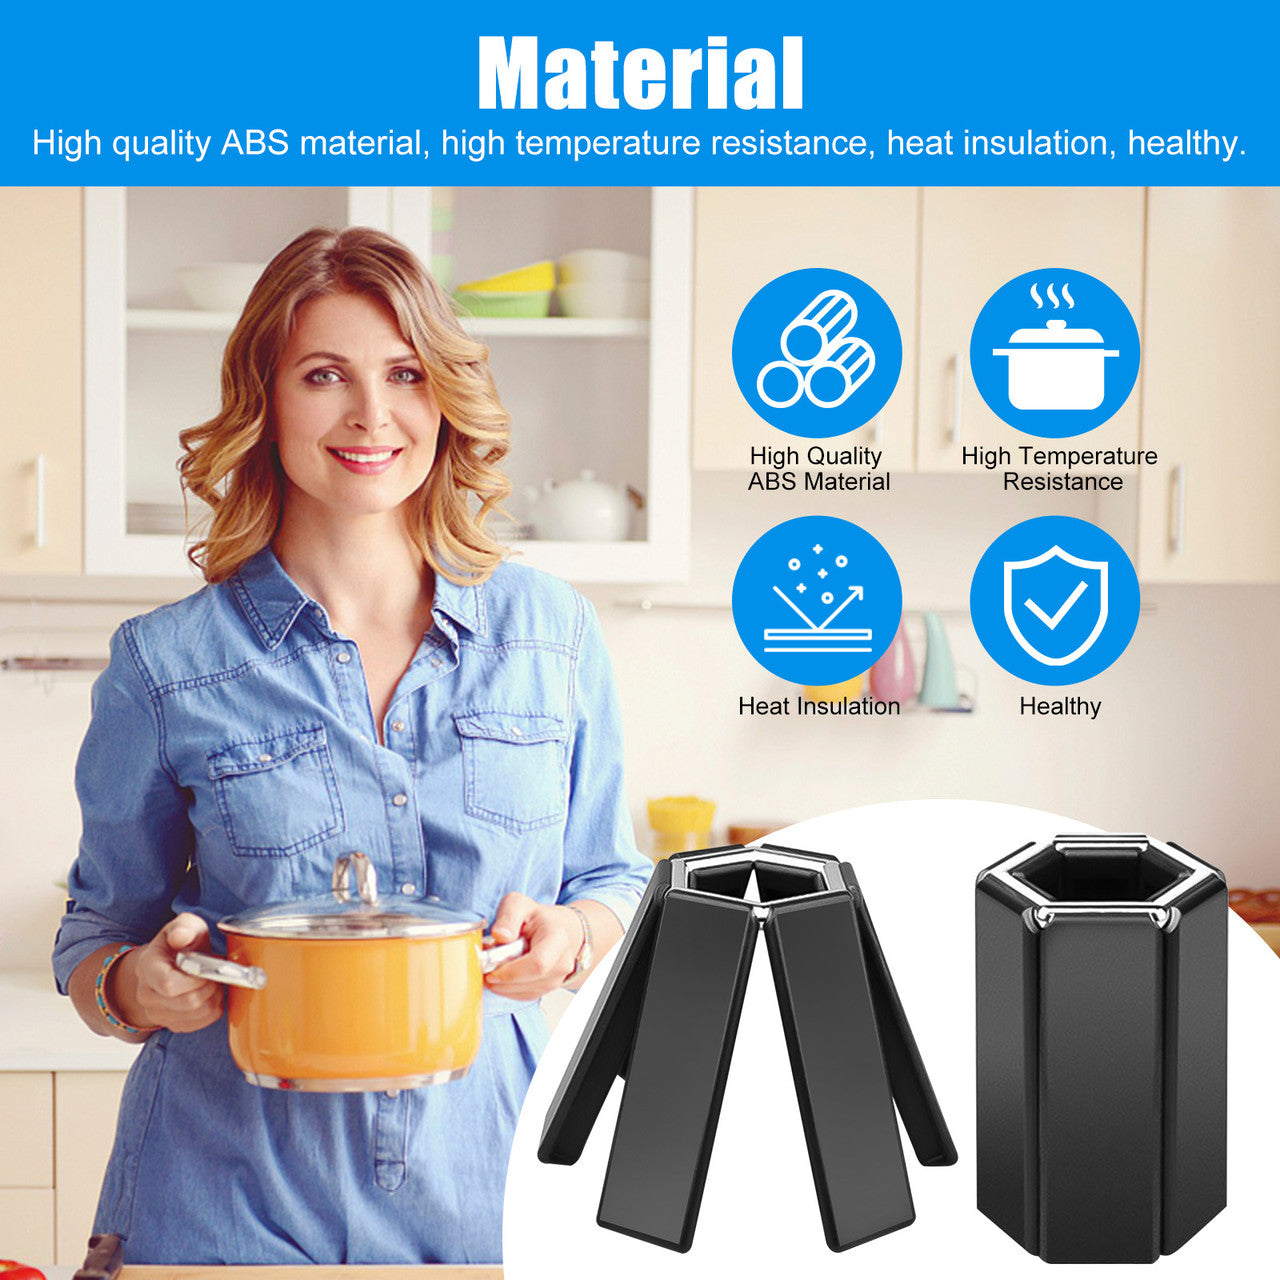 4 Pcs Foldable Pot Mat - Creative Foldable Trivet Mat Plastic Non Slip for Pots Pans Bowl Teapot Kitchen Accessories (Black)